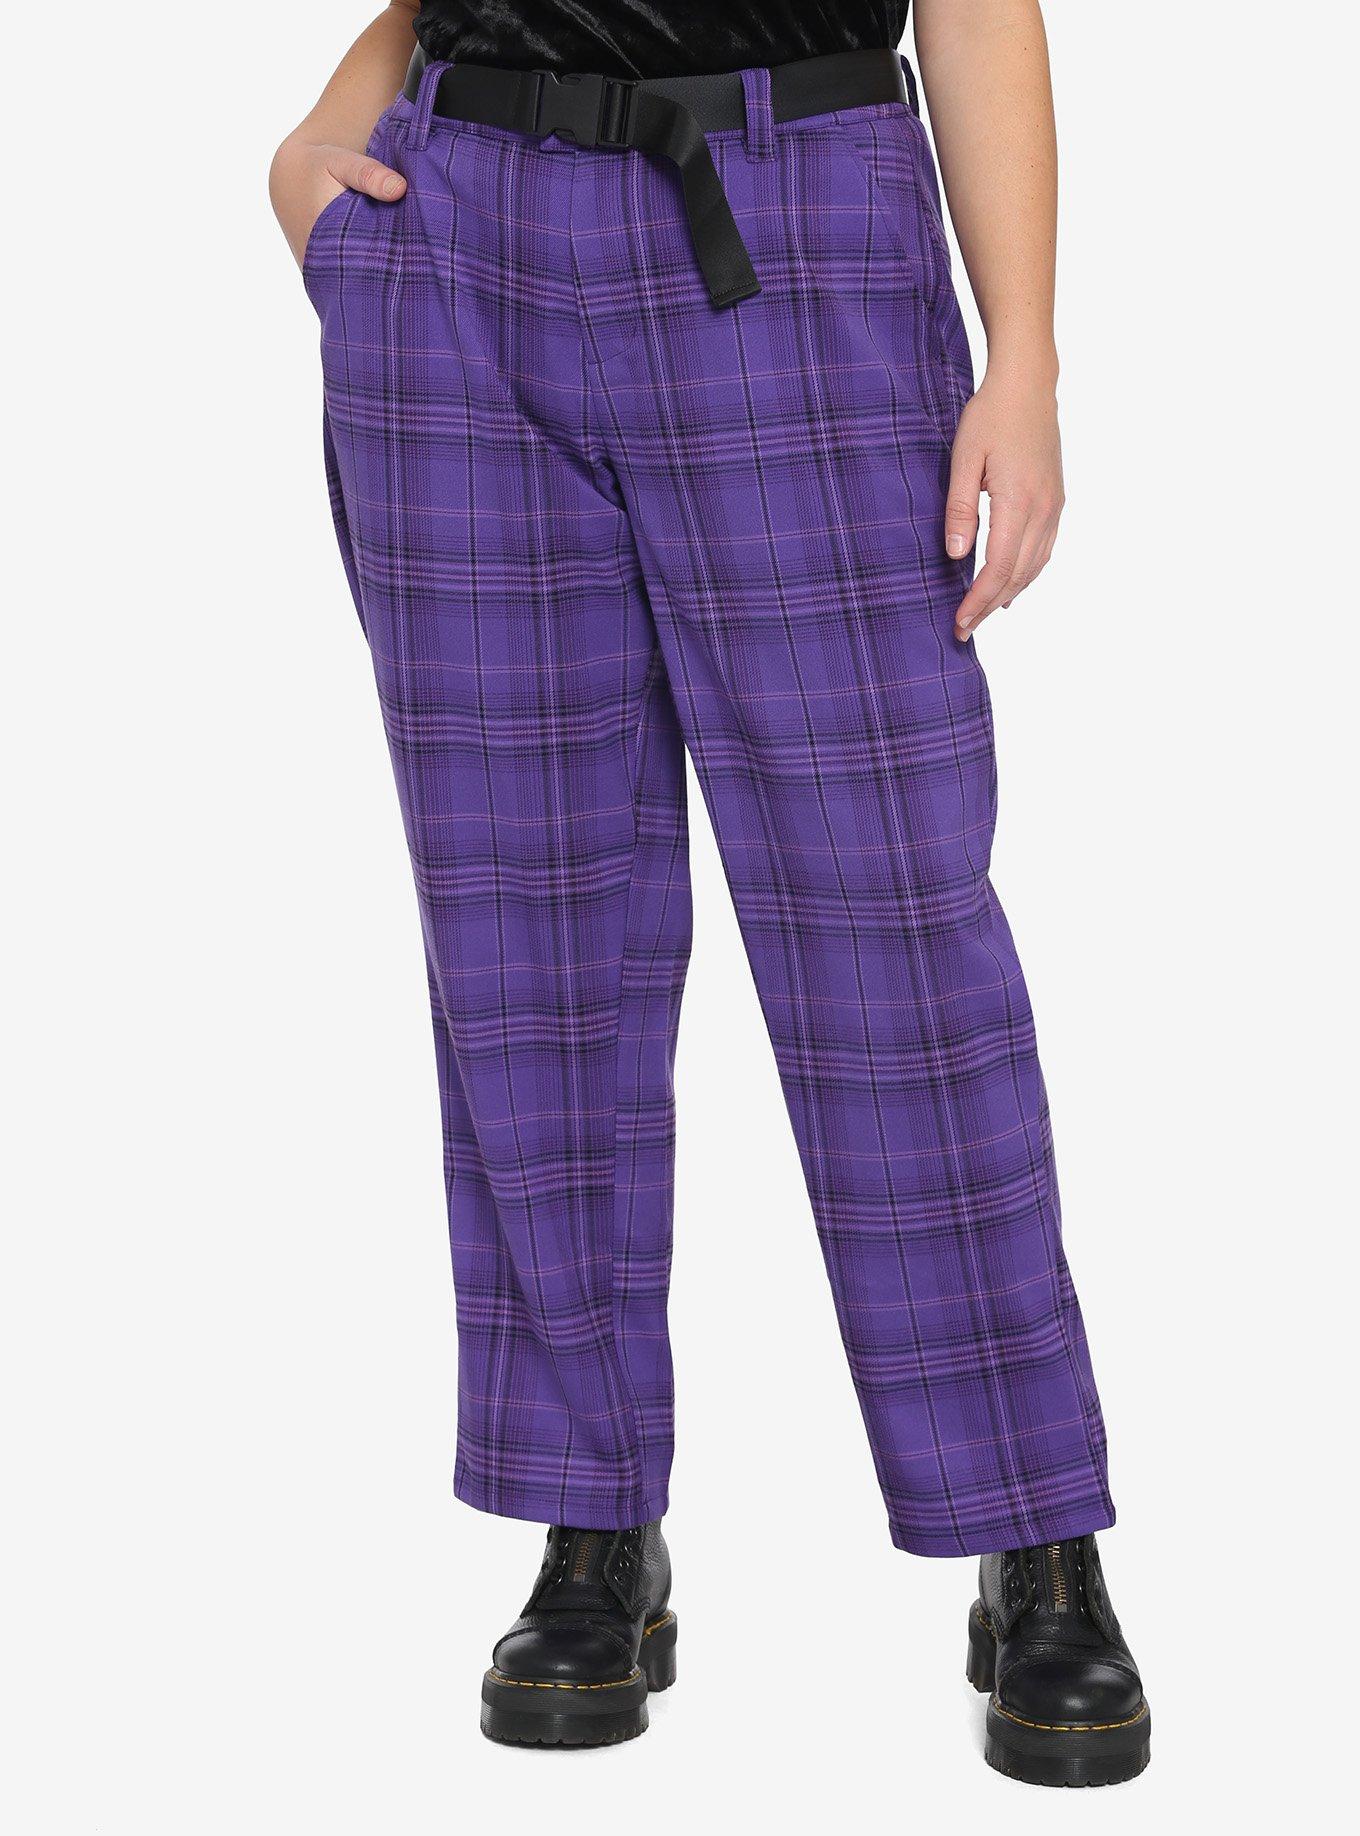 HT Denim Purple Plaid Straight-Leg Pants With Buckle Belt Plus Size, PLAID, hi-res